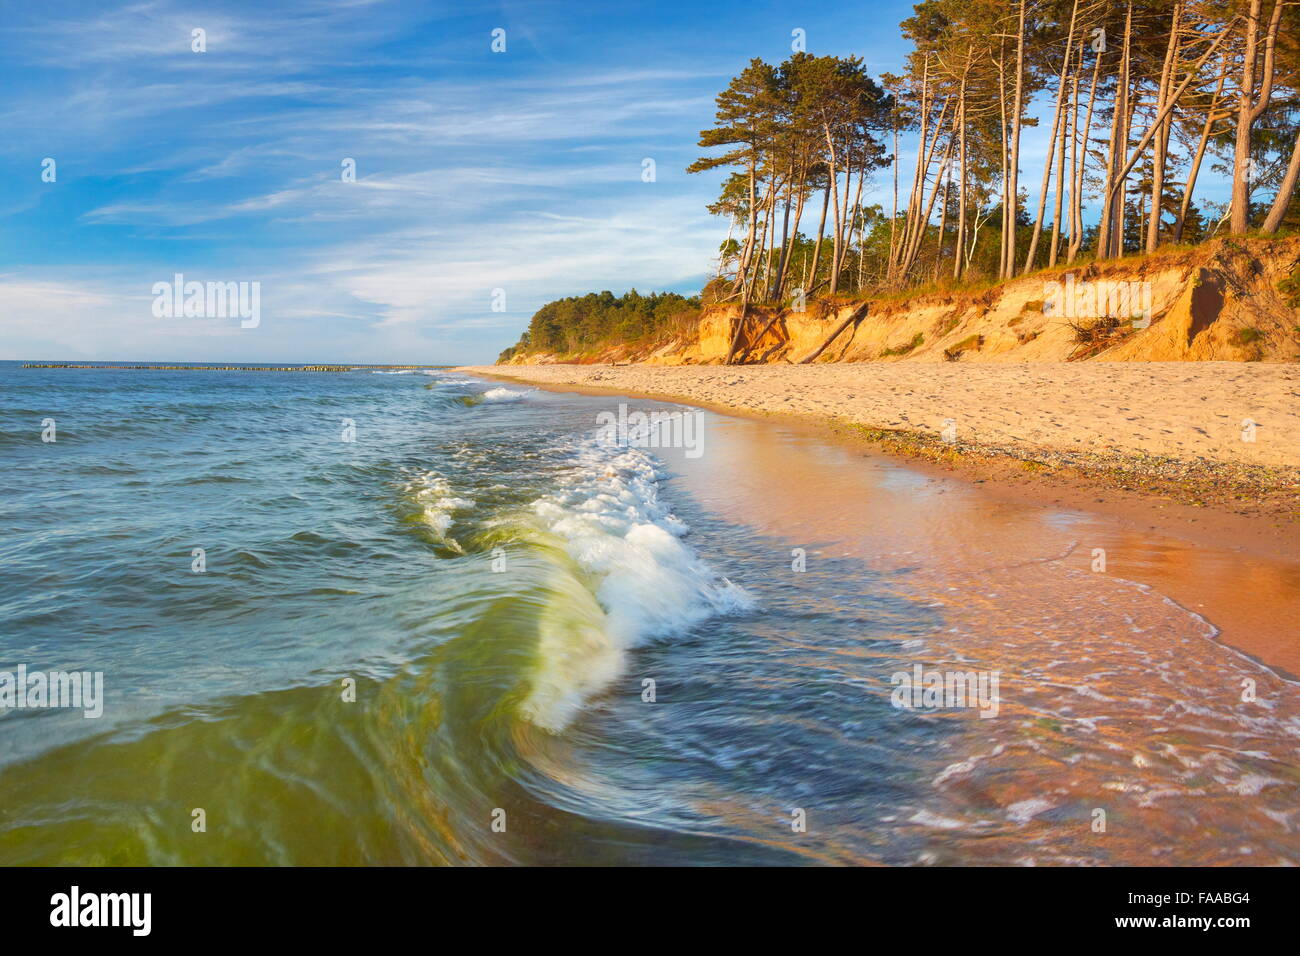 Paysage de la mer Baltique, occidentale, Pologne Banque D'Images